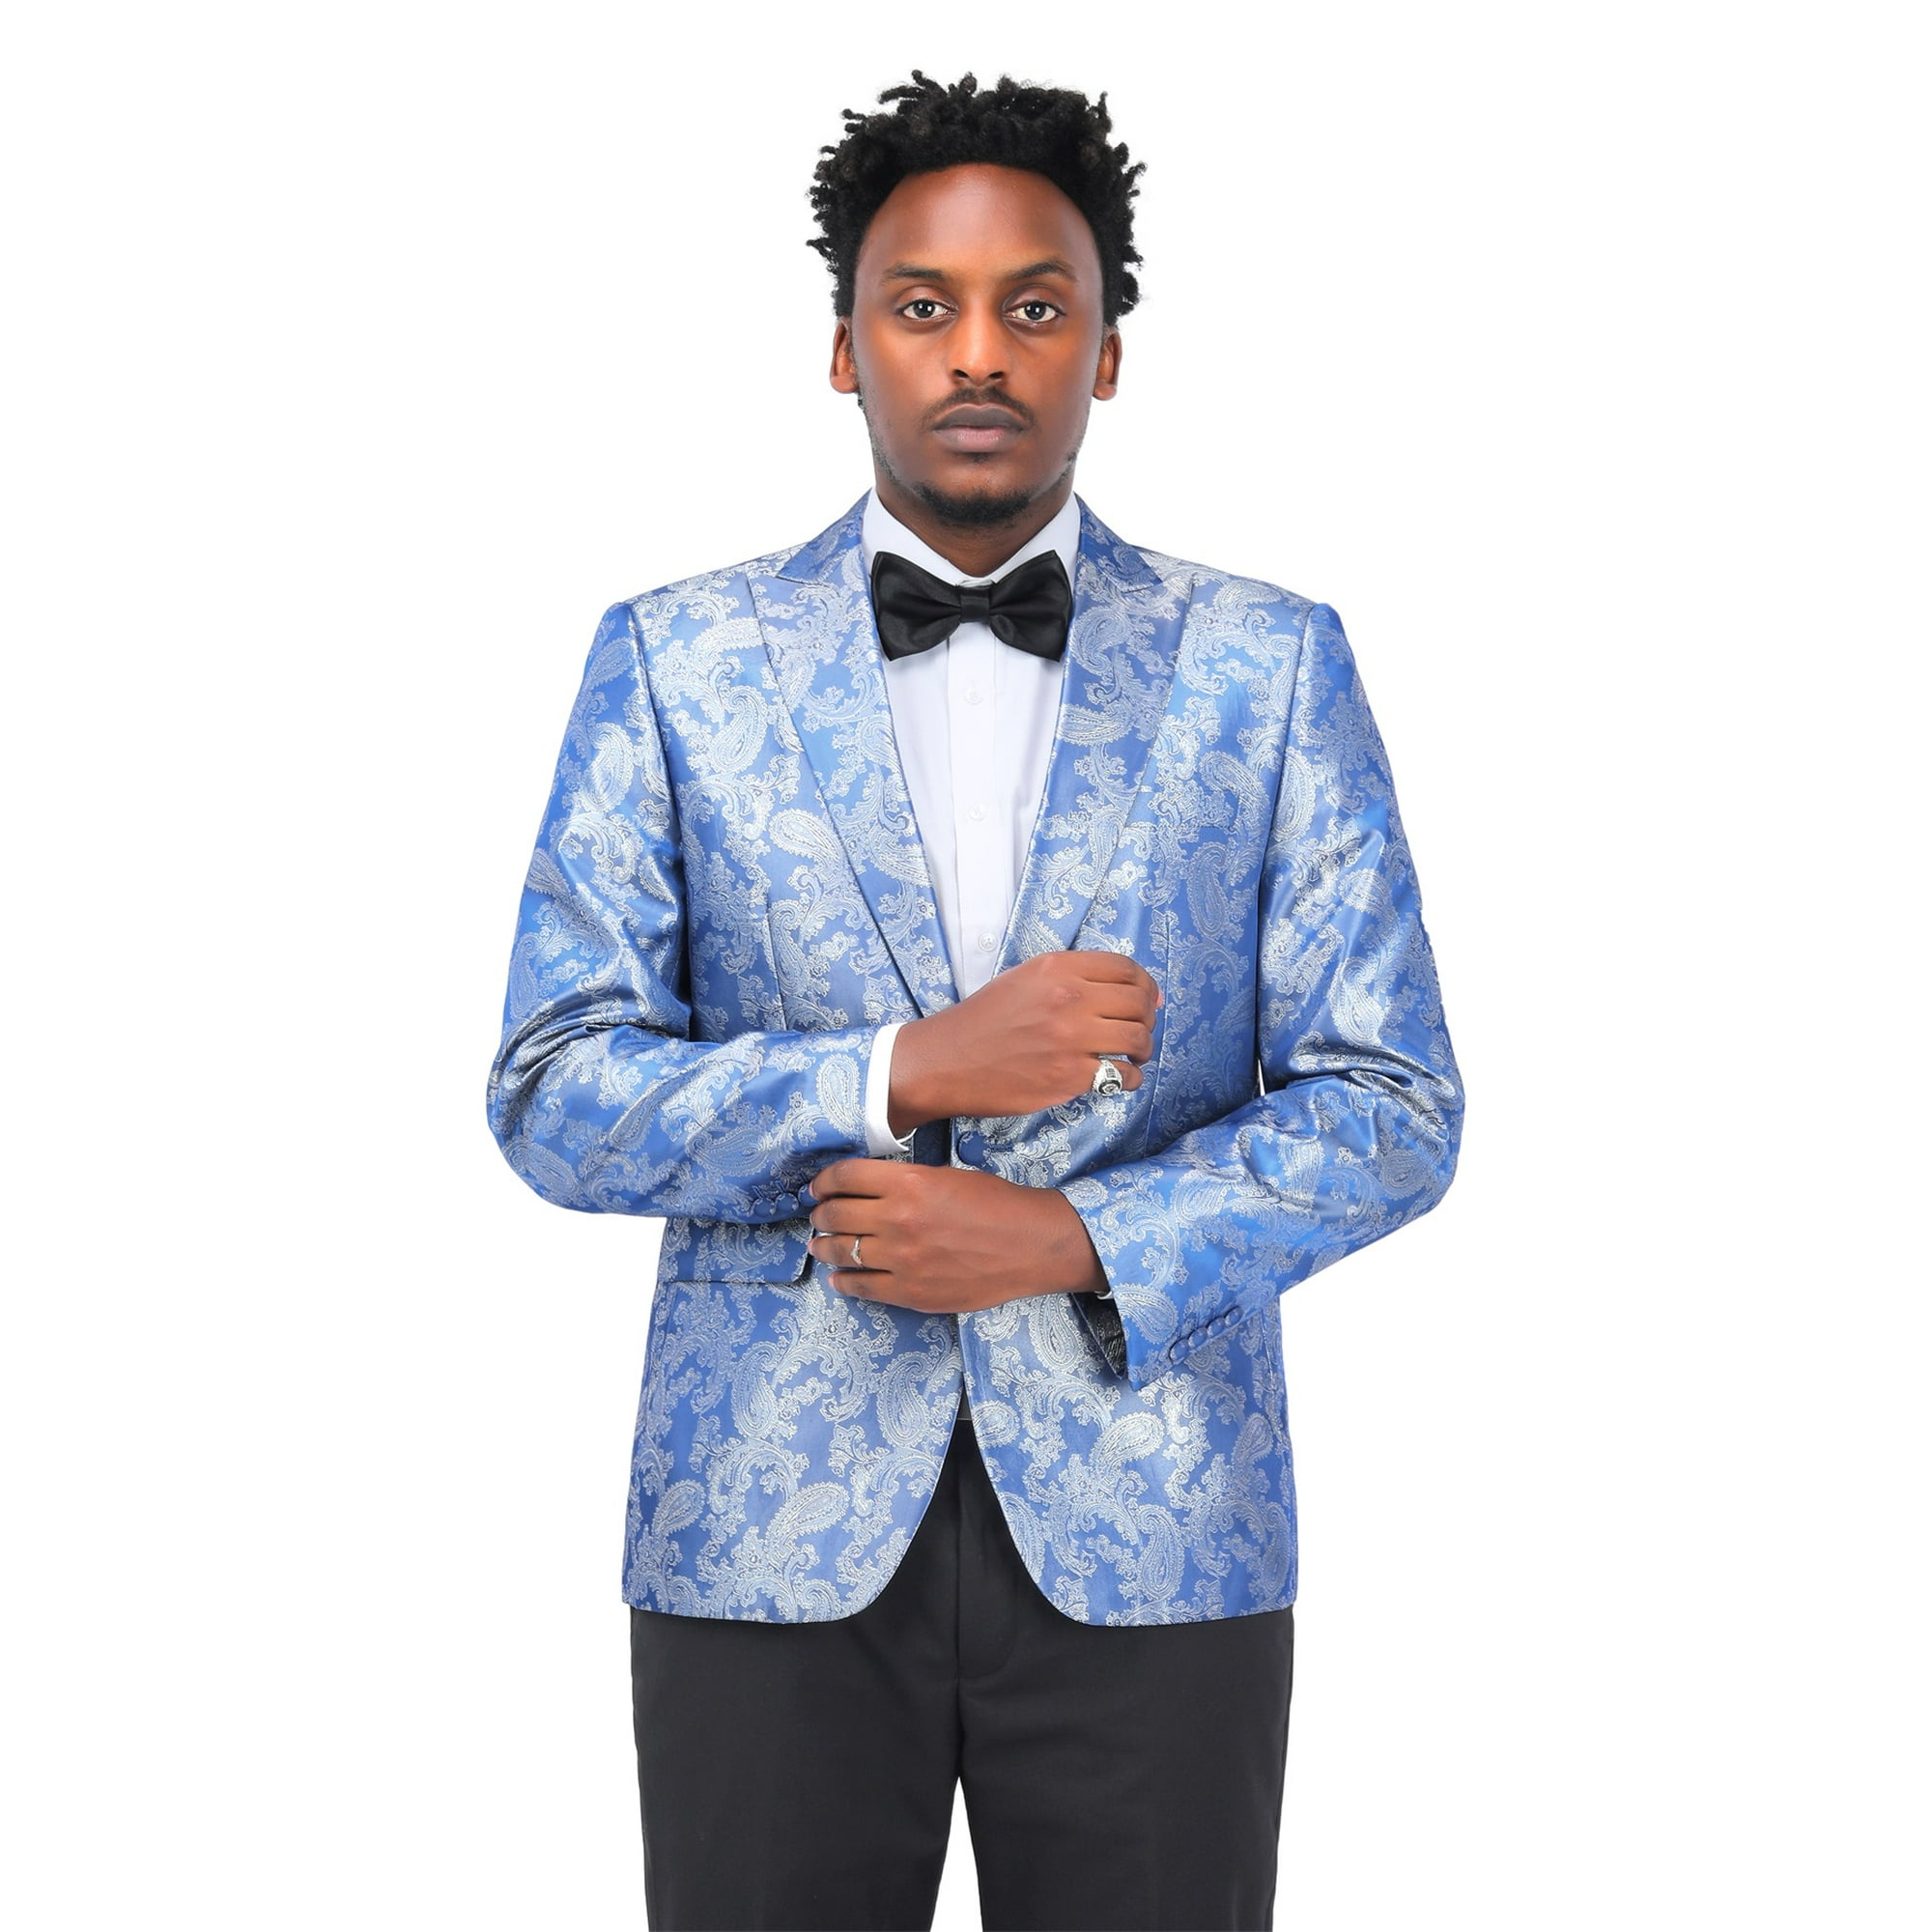 Wehilion Suit for Men Vintage Retro Wedding Suits Set Slim Fit 3 Pieces Jacket Blazer Groom Tuxedo Prom Mens Suit Royal Blue M, Men's, Size: Medium